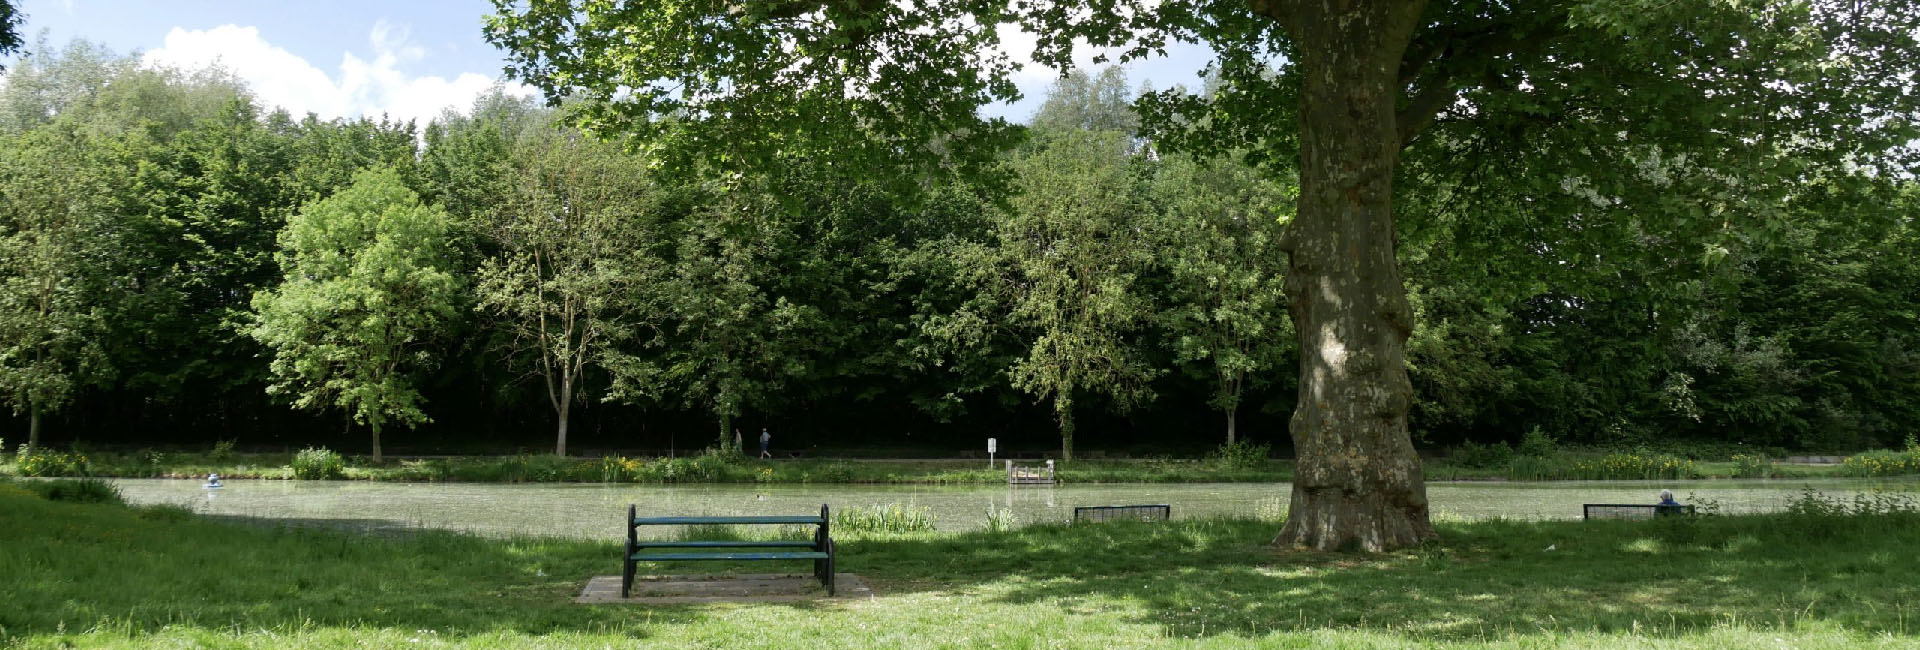 Une photographie du parc Fortier. À l'ombre d'un arbre, un banc attend le prochain passant qui viendra contempler le lac.